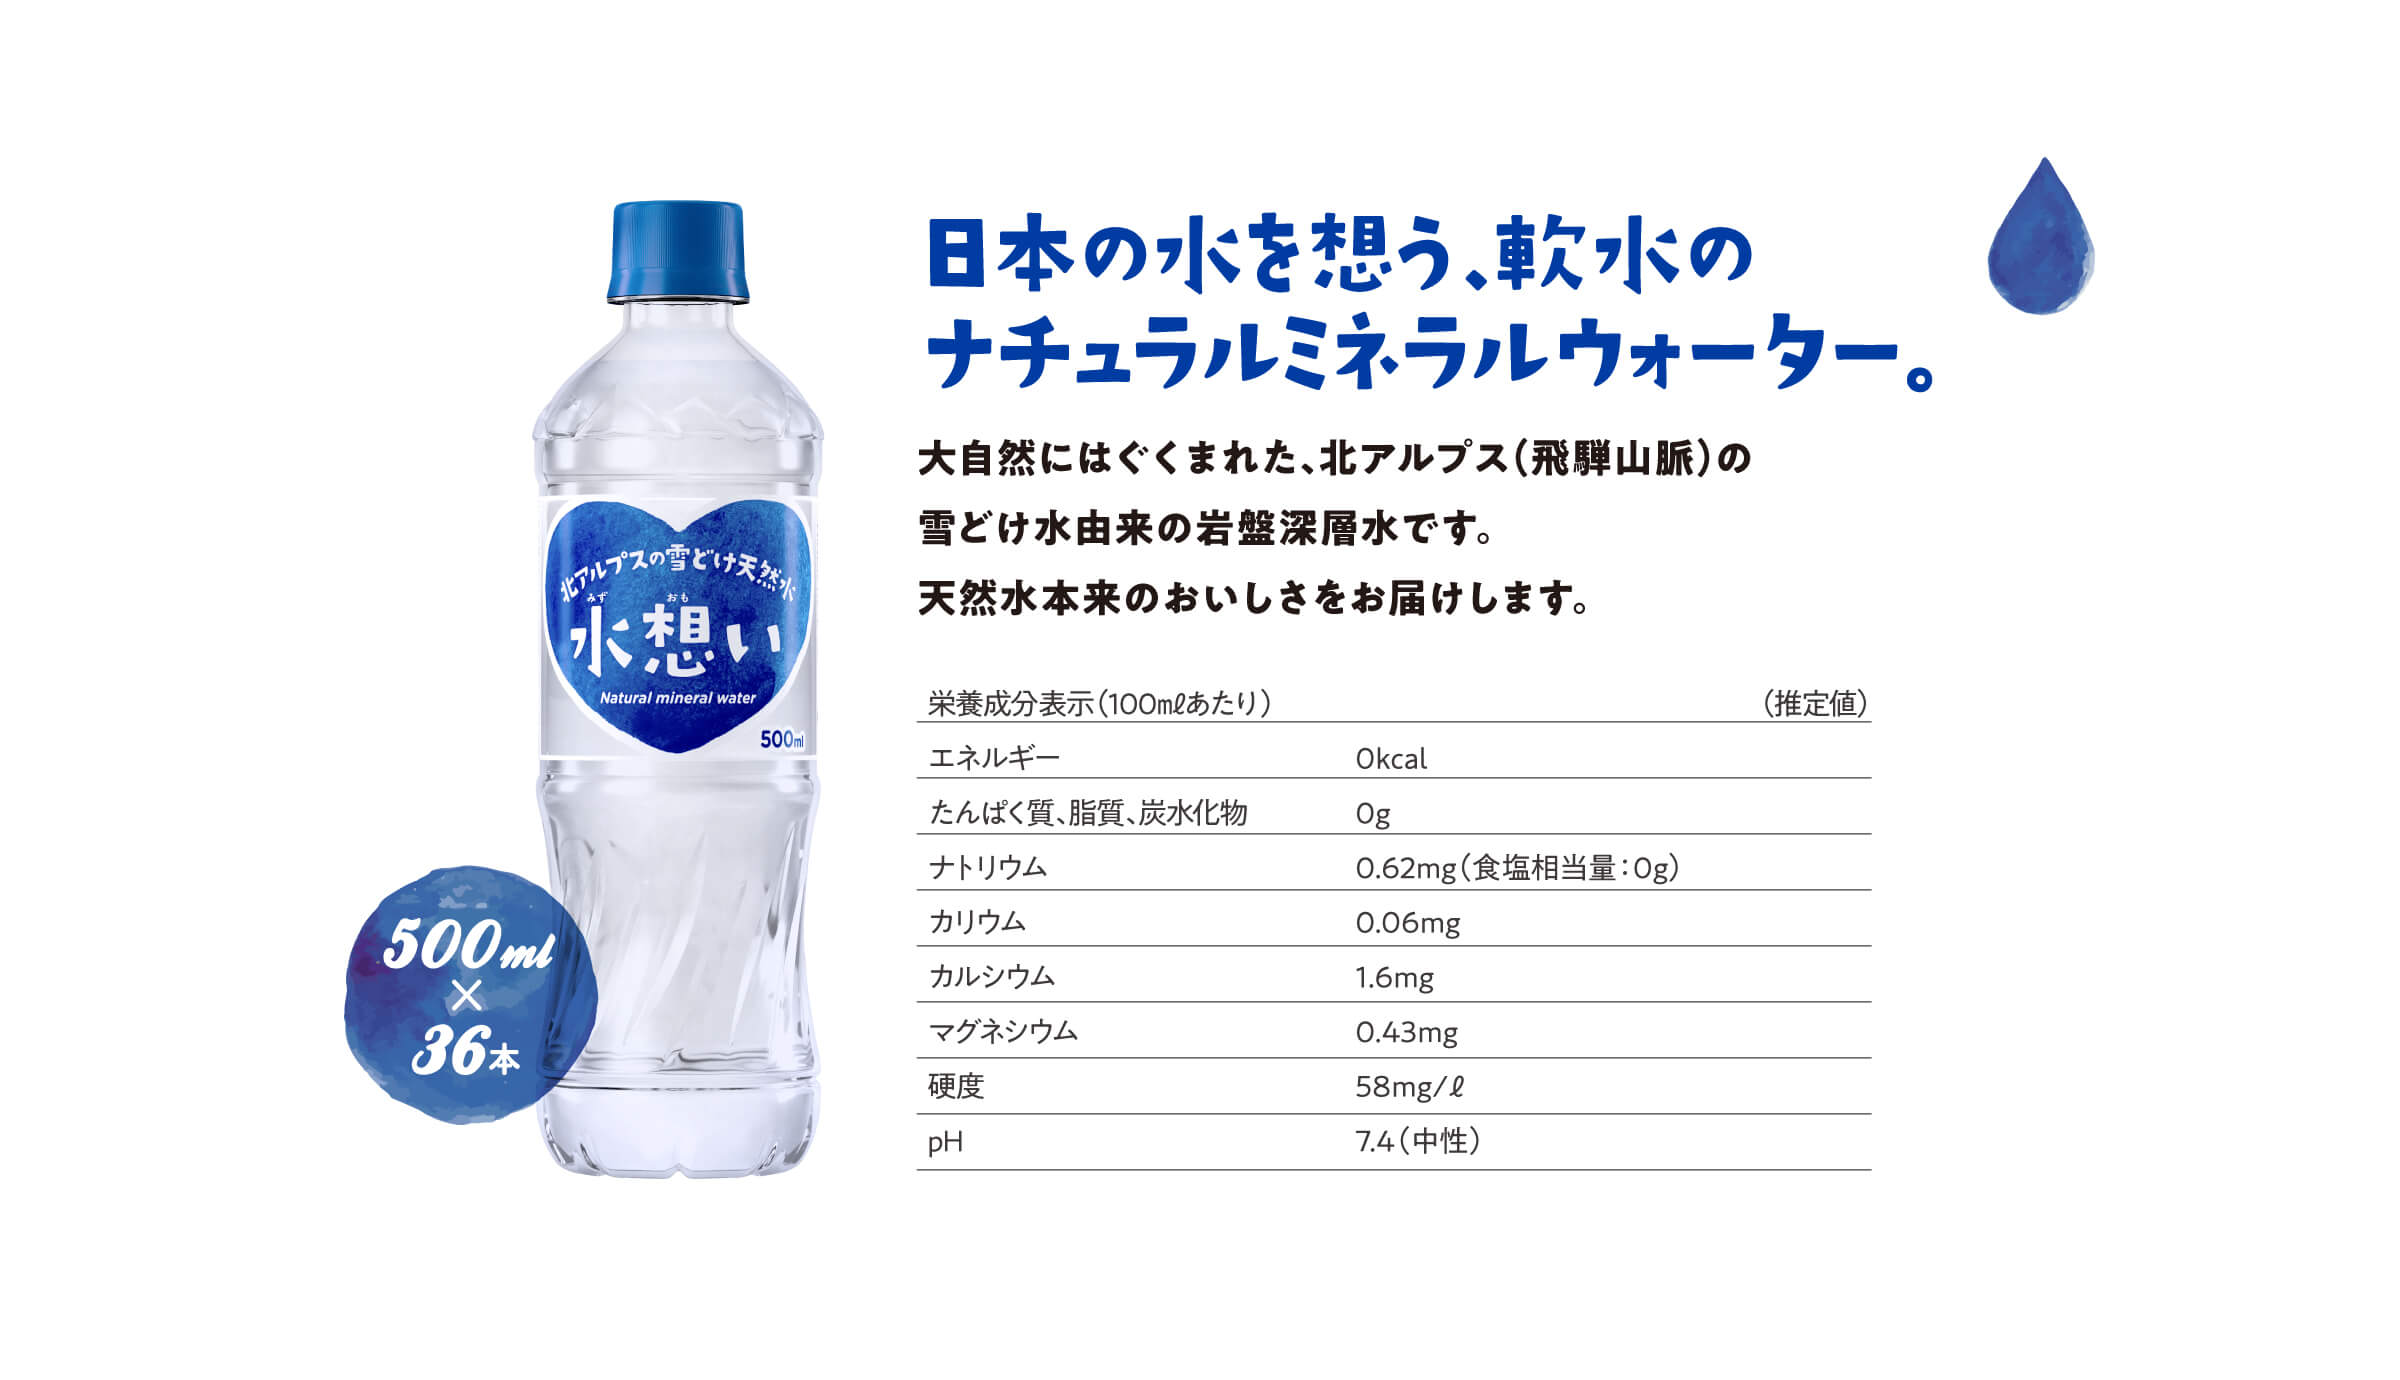 日本の水を想う、軟水のナチュラルミネラルウォーター。